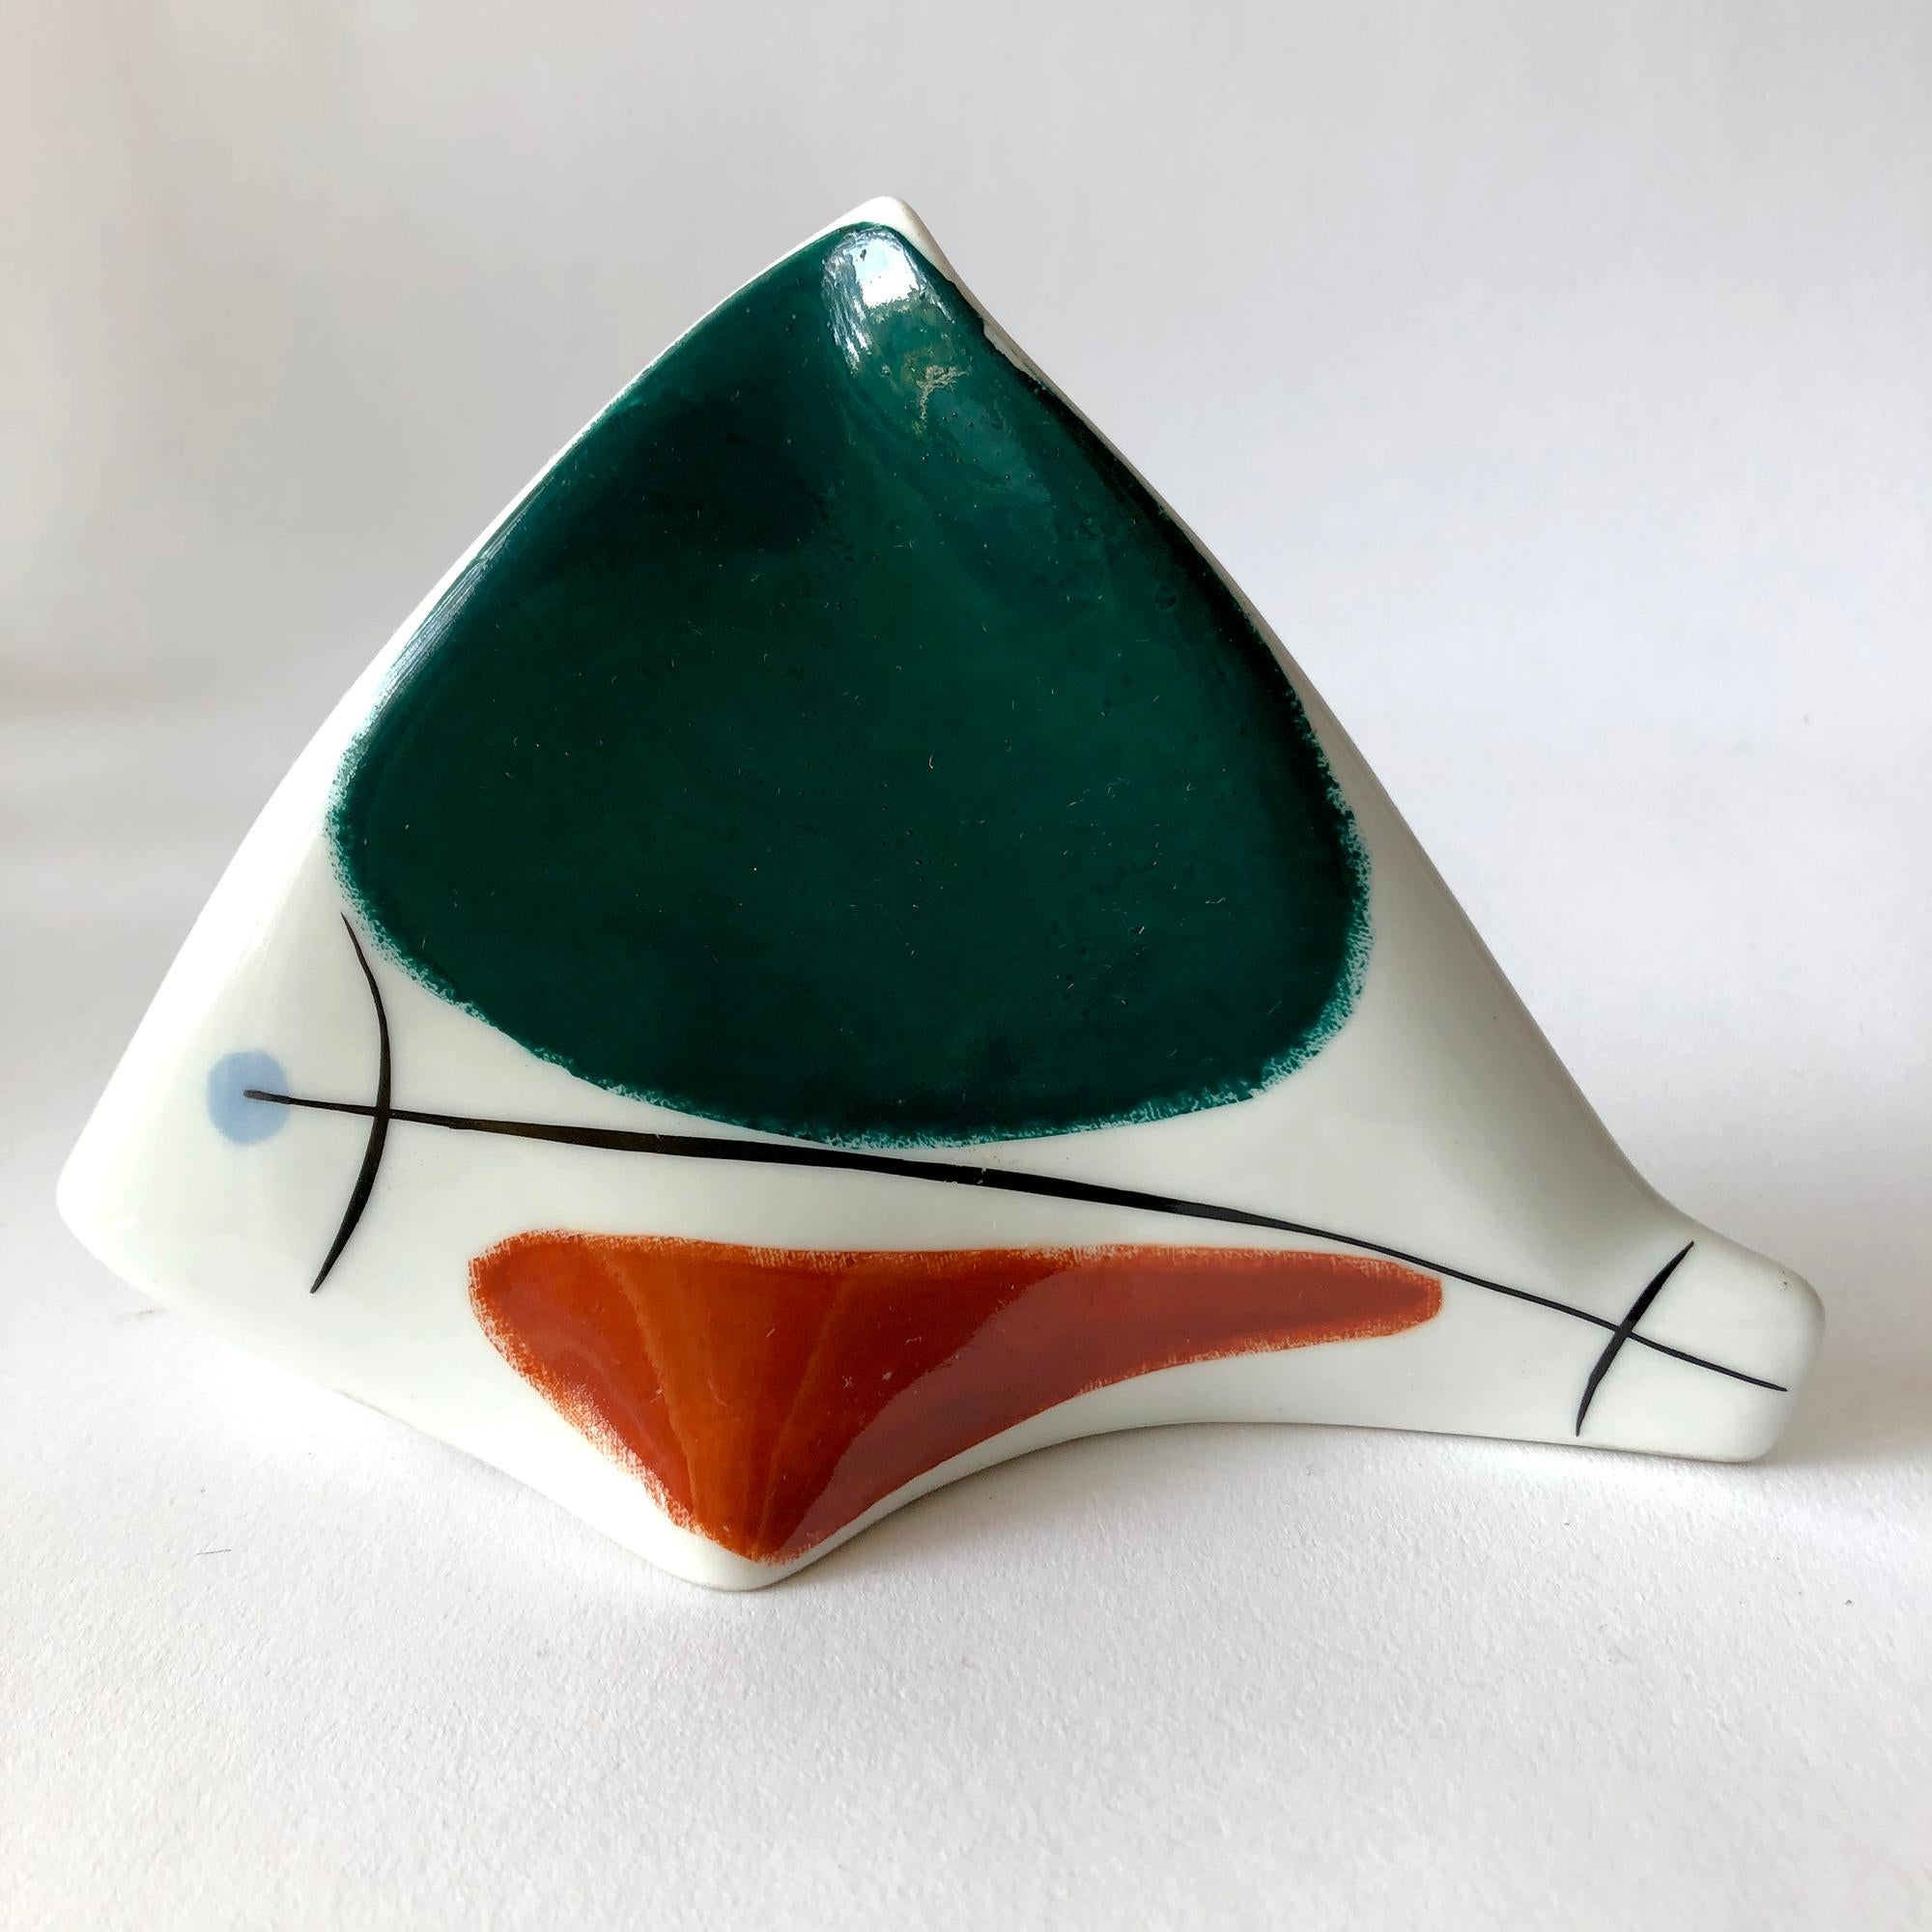 Estonian 1950s European Modernist Porcelain Fish Sculpture